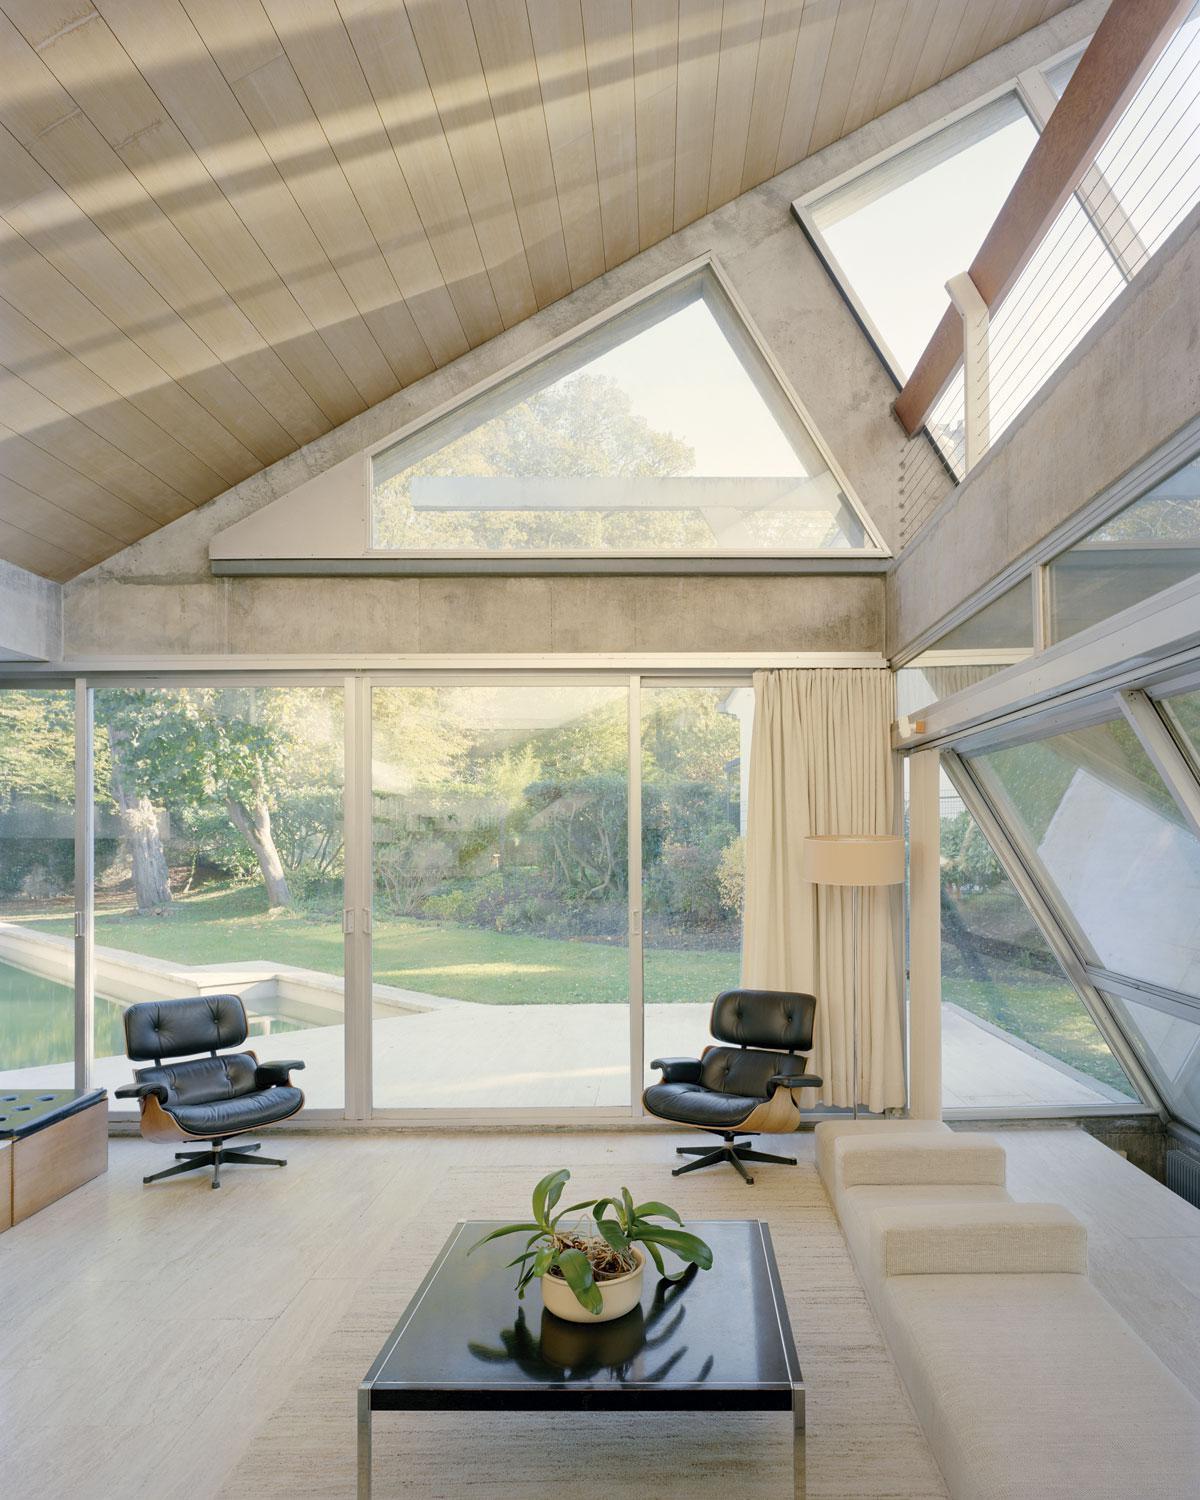 De minimalistische inrichting, met onder andere Eames lounge chairs, laat de architectuur voor zich spreken.